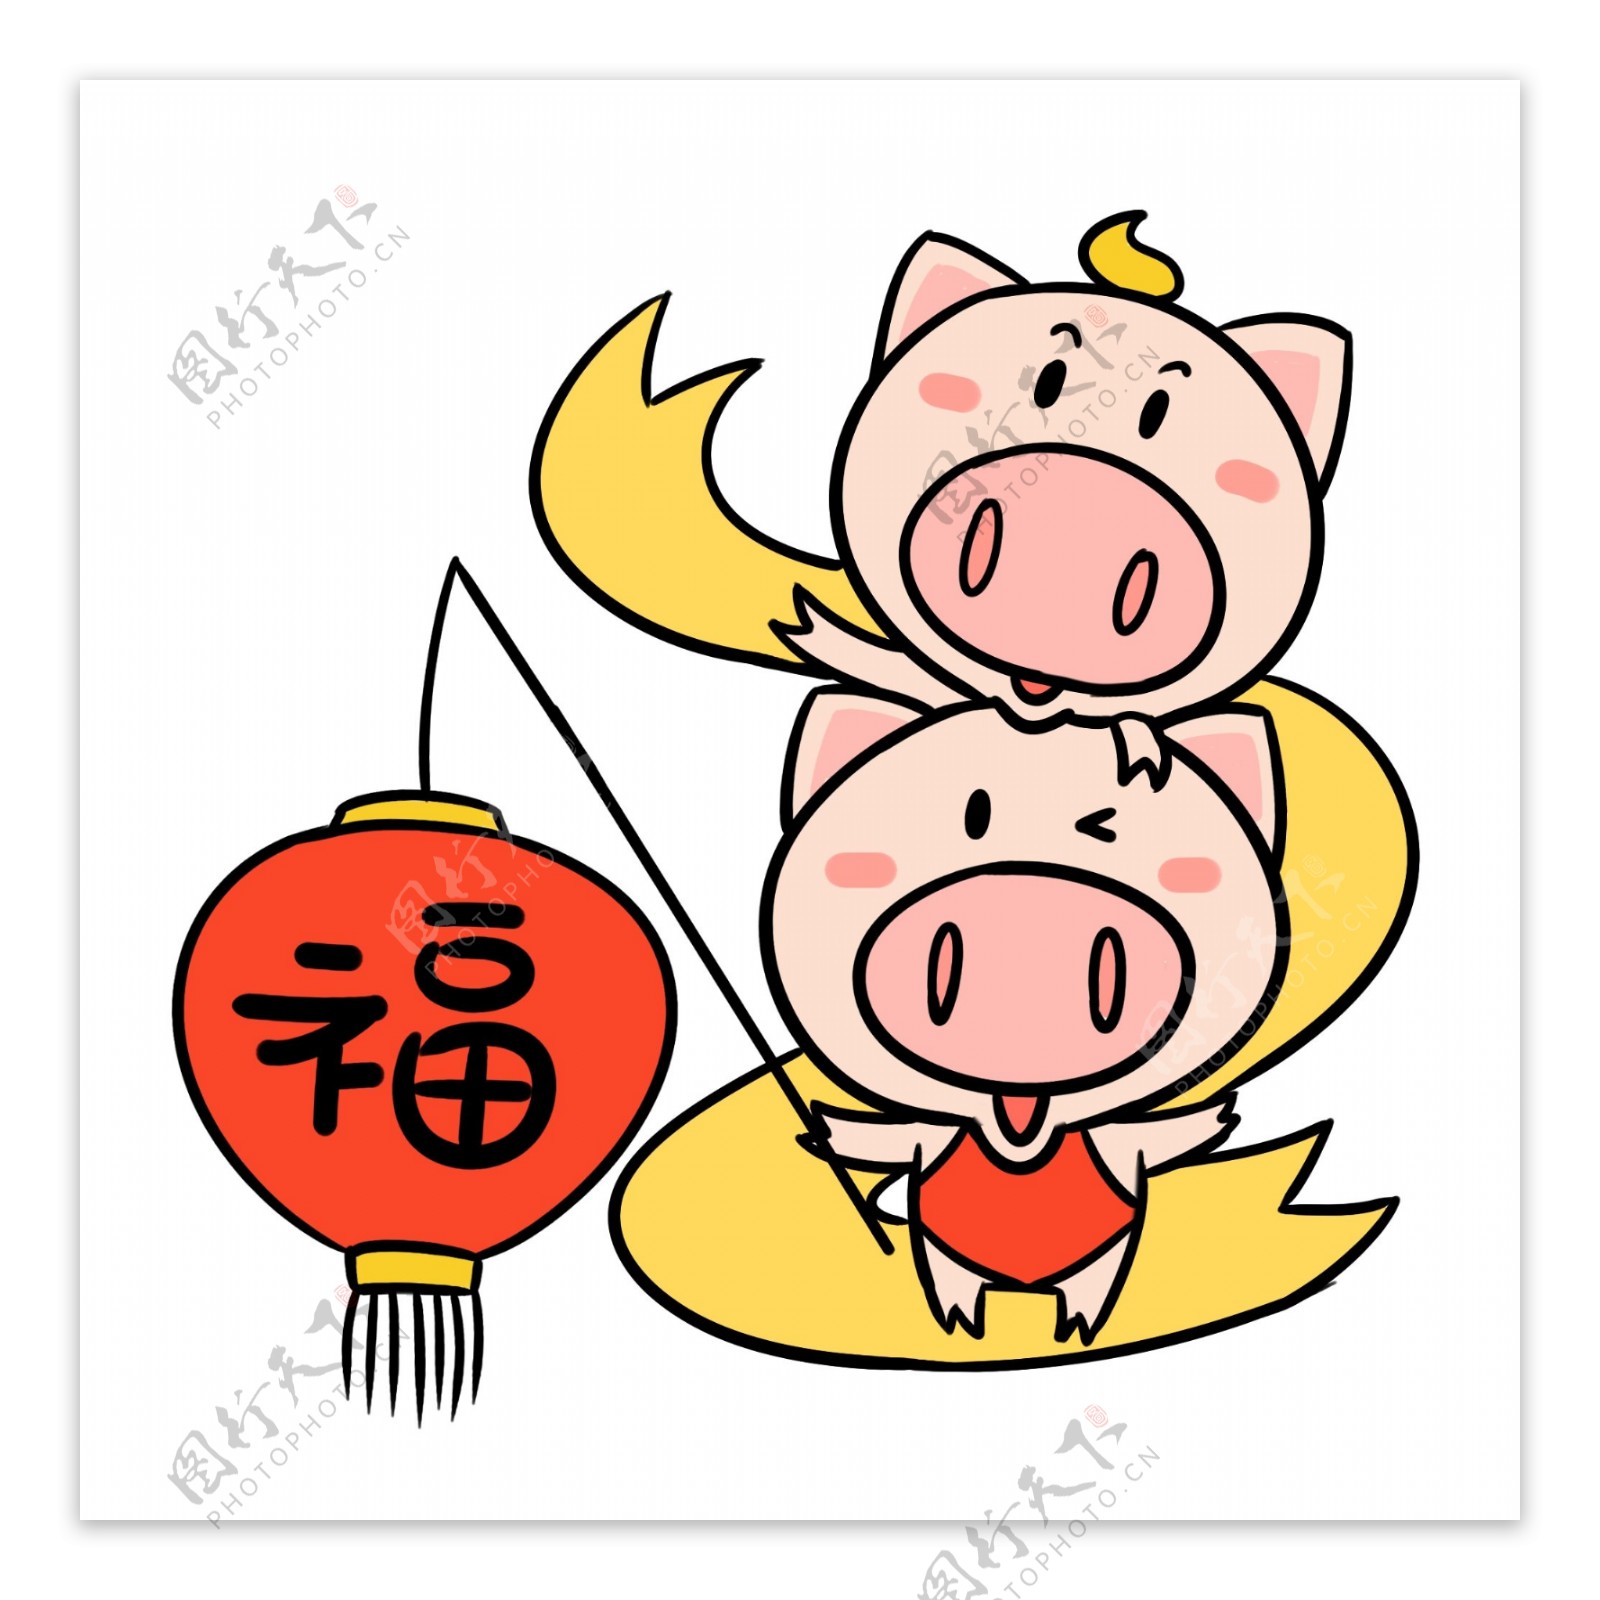 挑福灯笼的可爱猪猪卡通插画